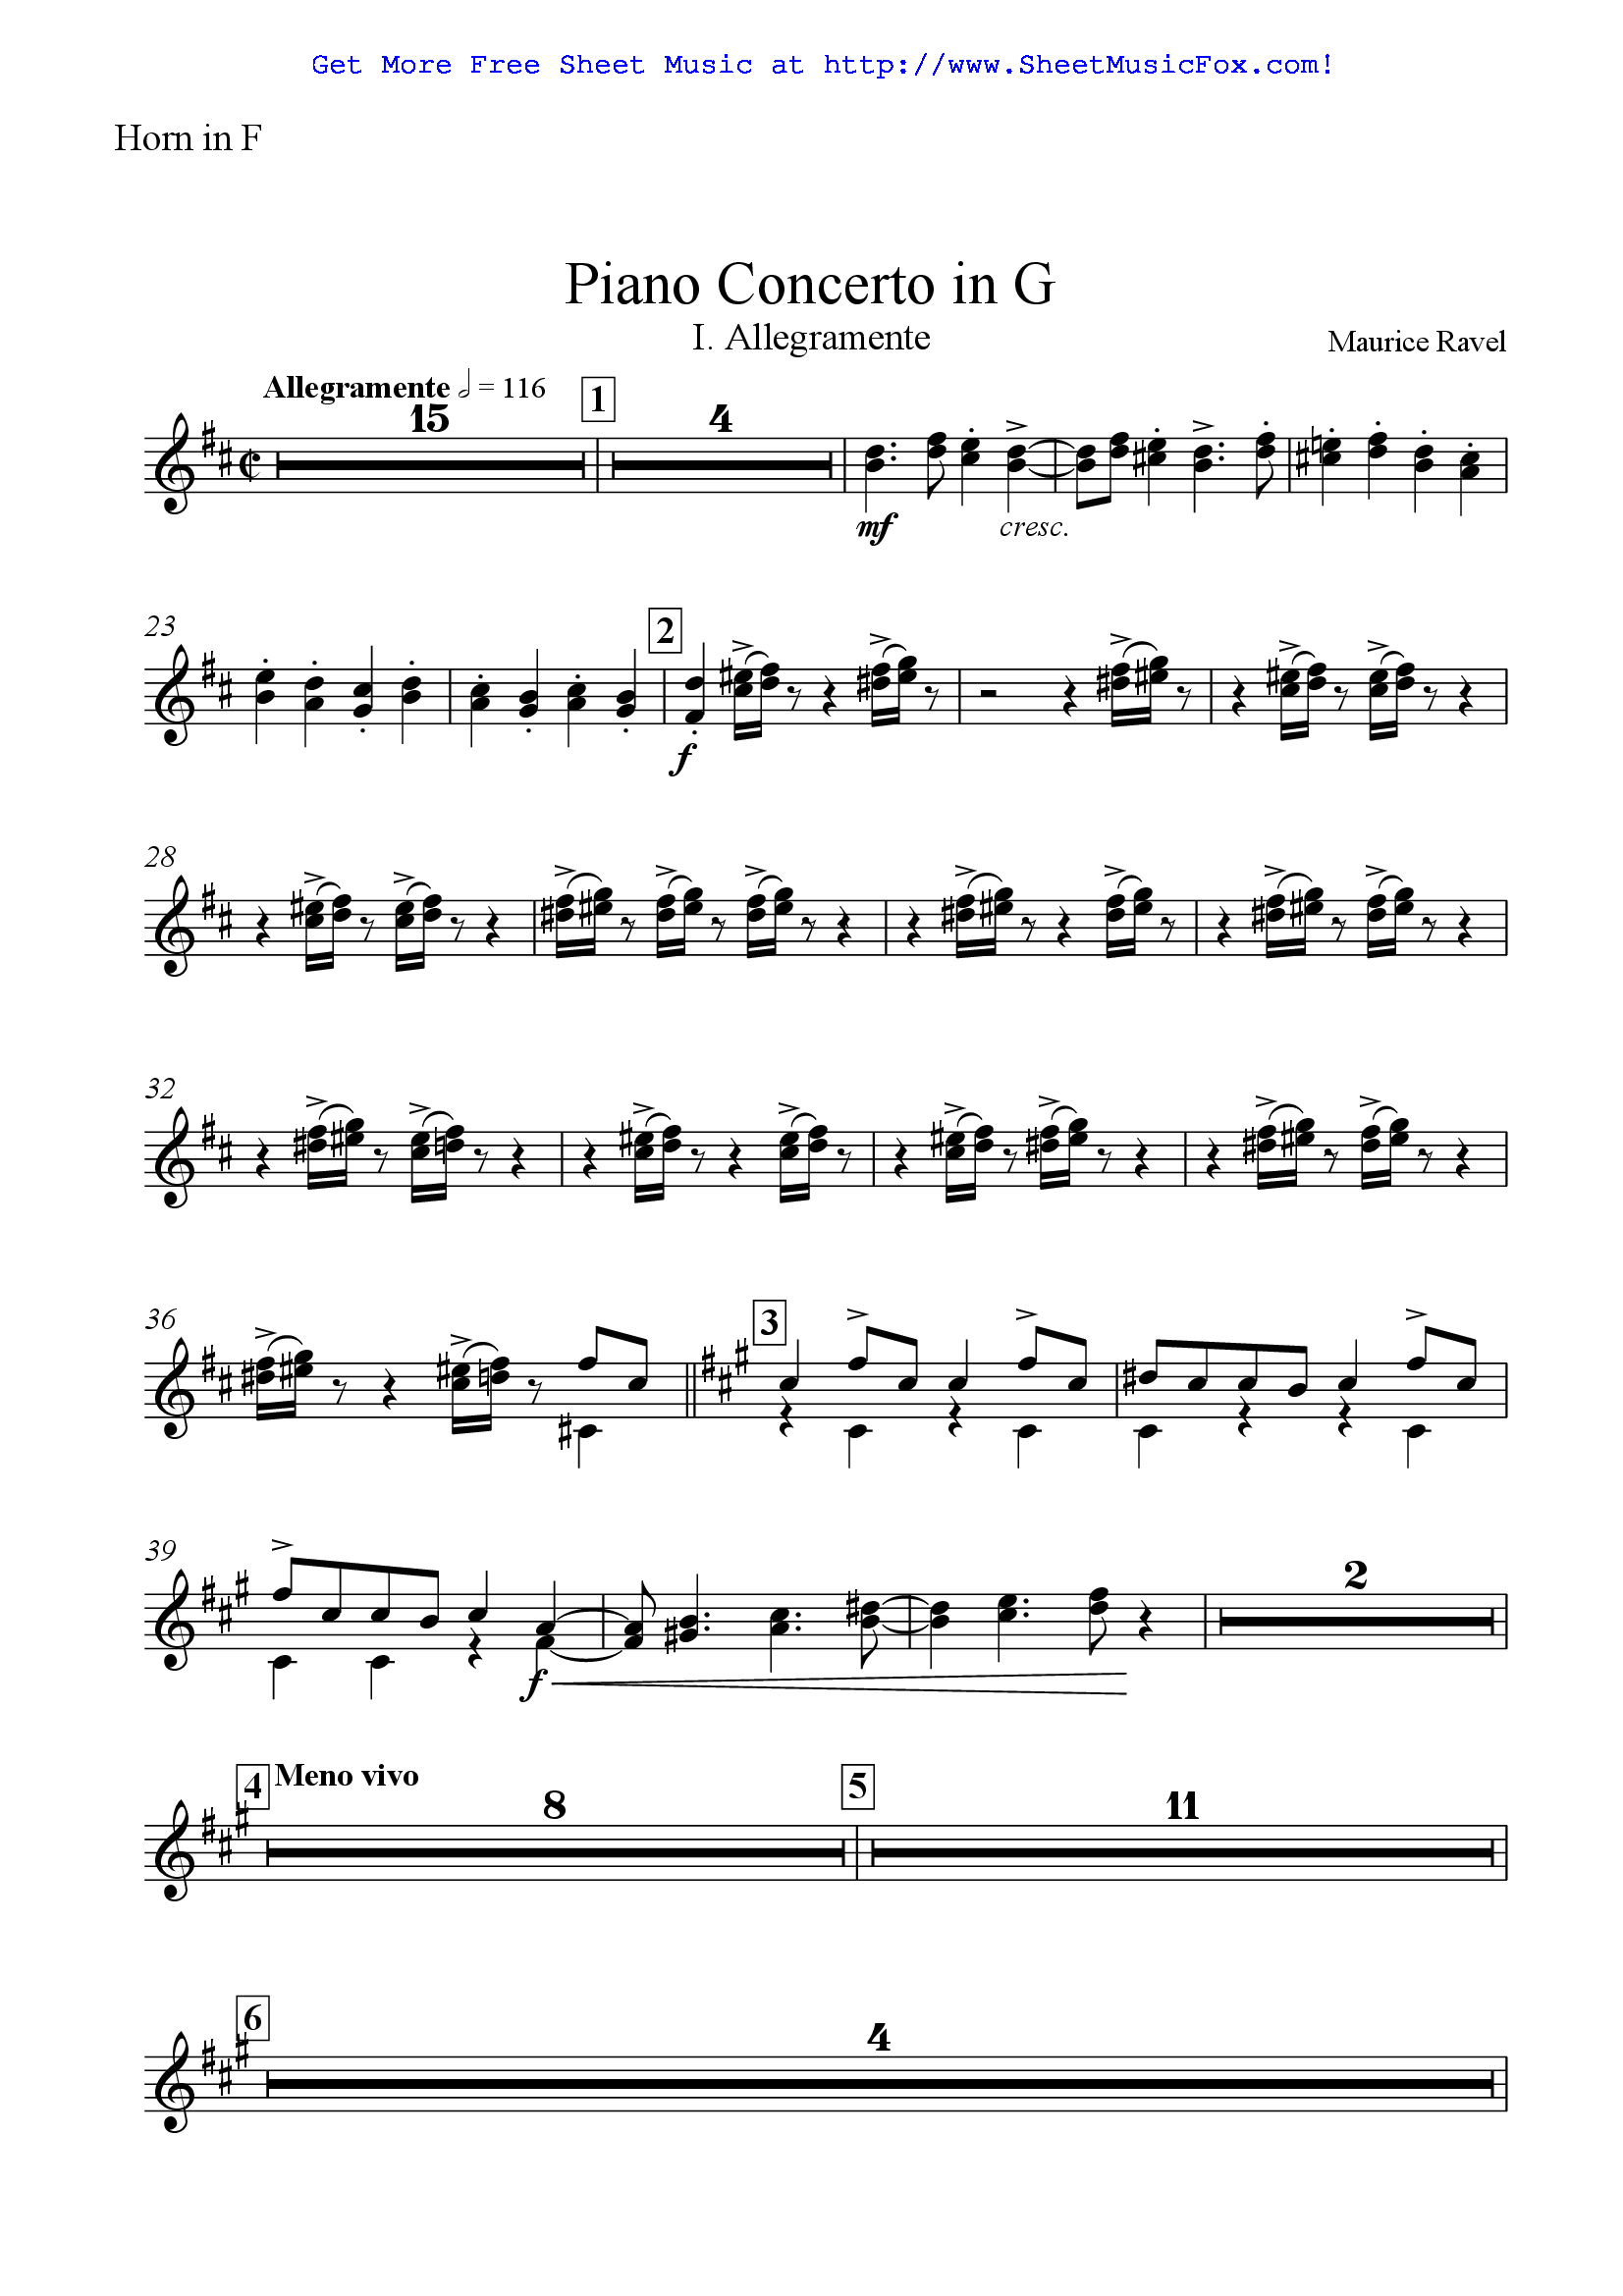 ravel piano concerto in g score pdf